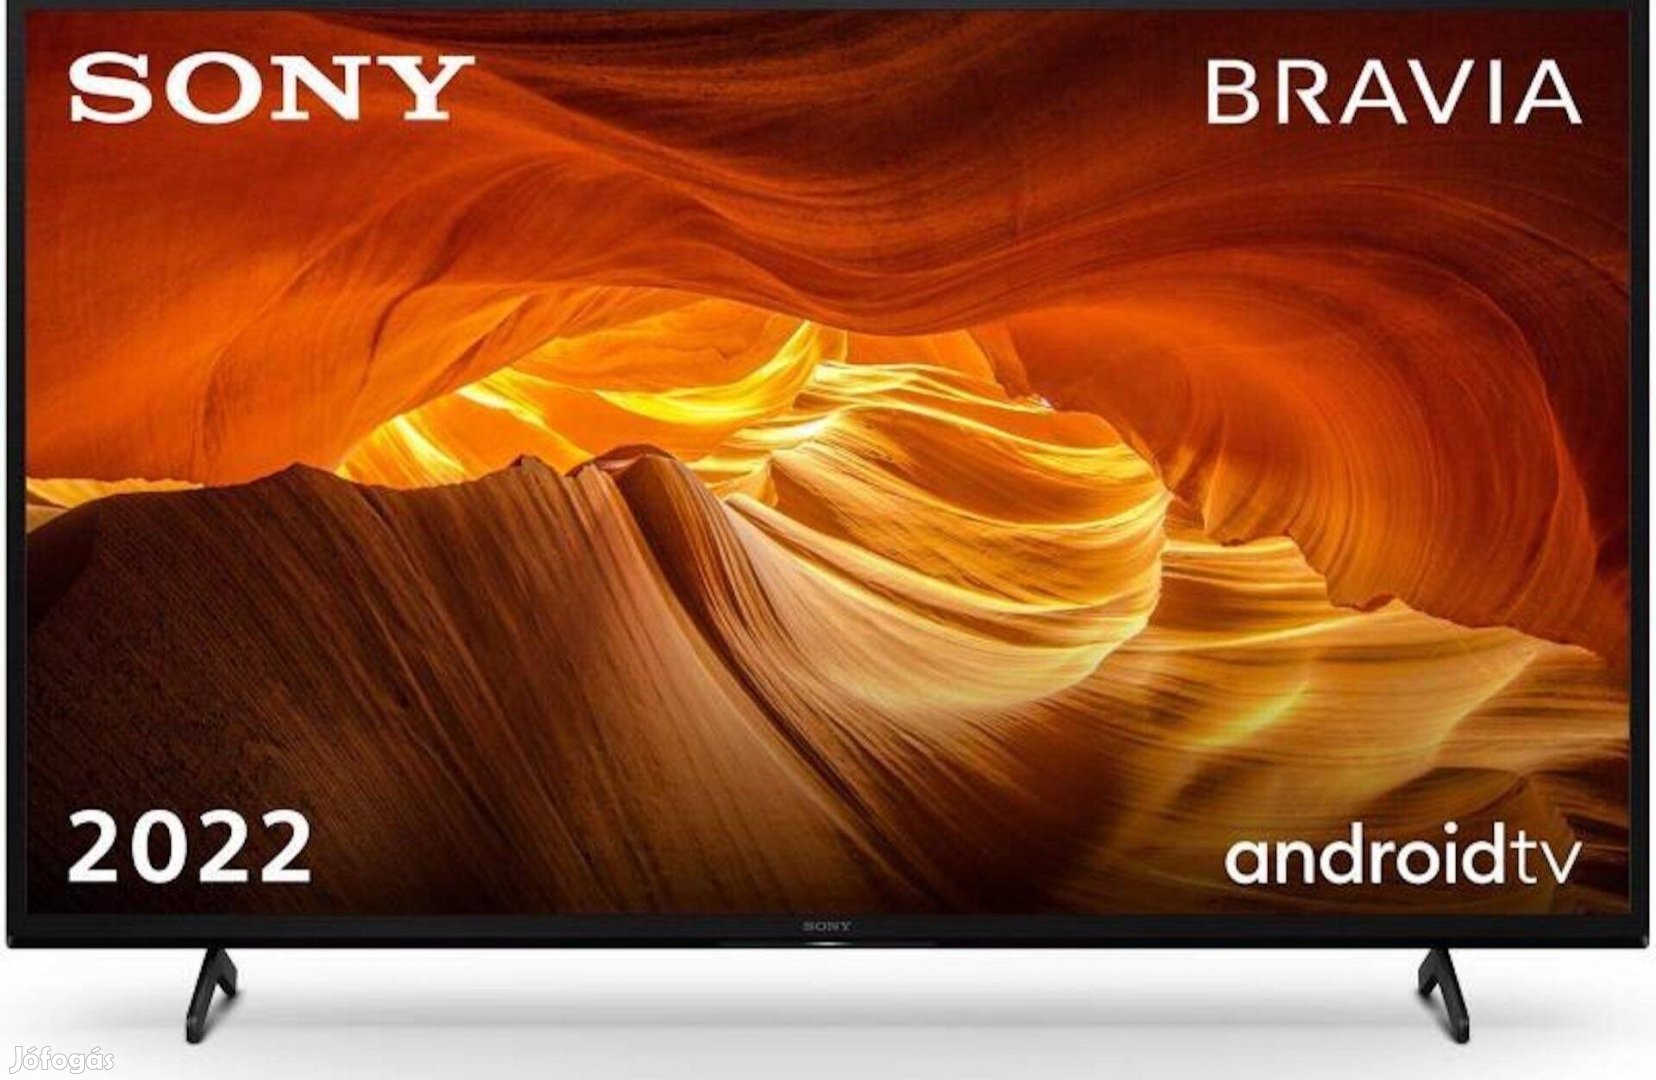 Sony KD50X72Kpaep Smart LED Tv,126cm,4K Ultra HD,(230e.helyett)